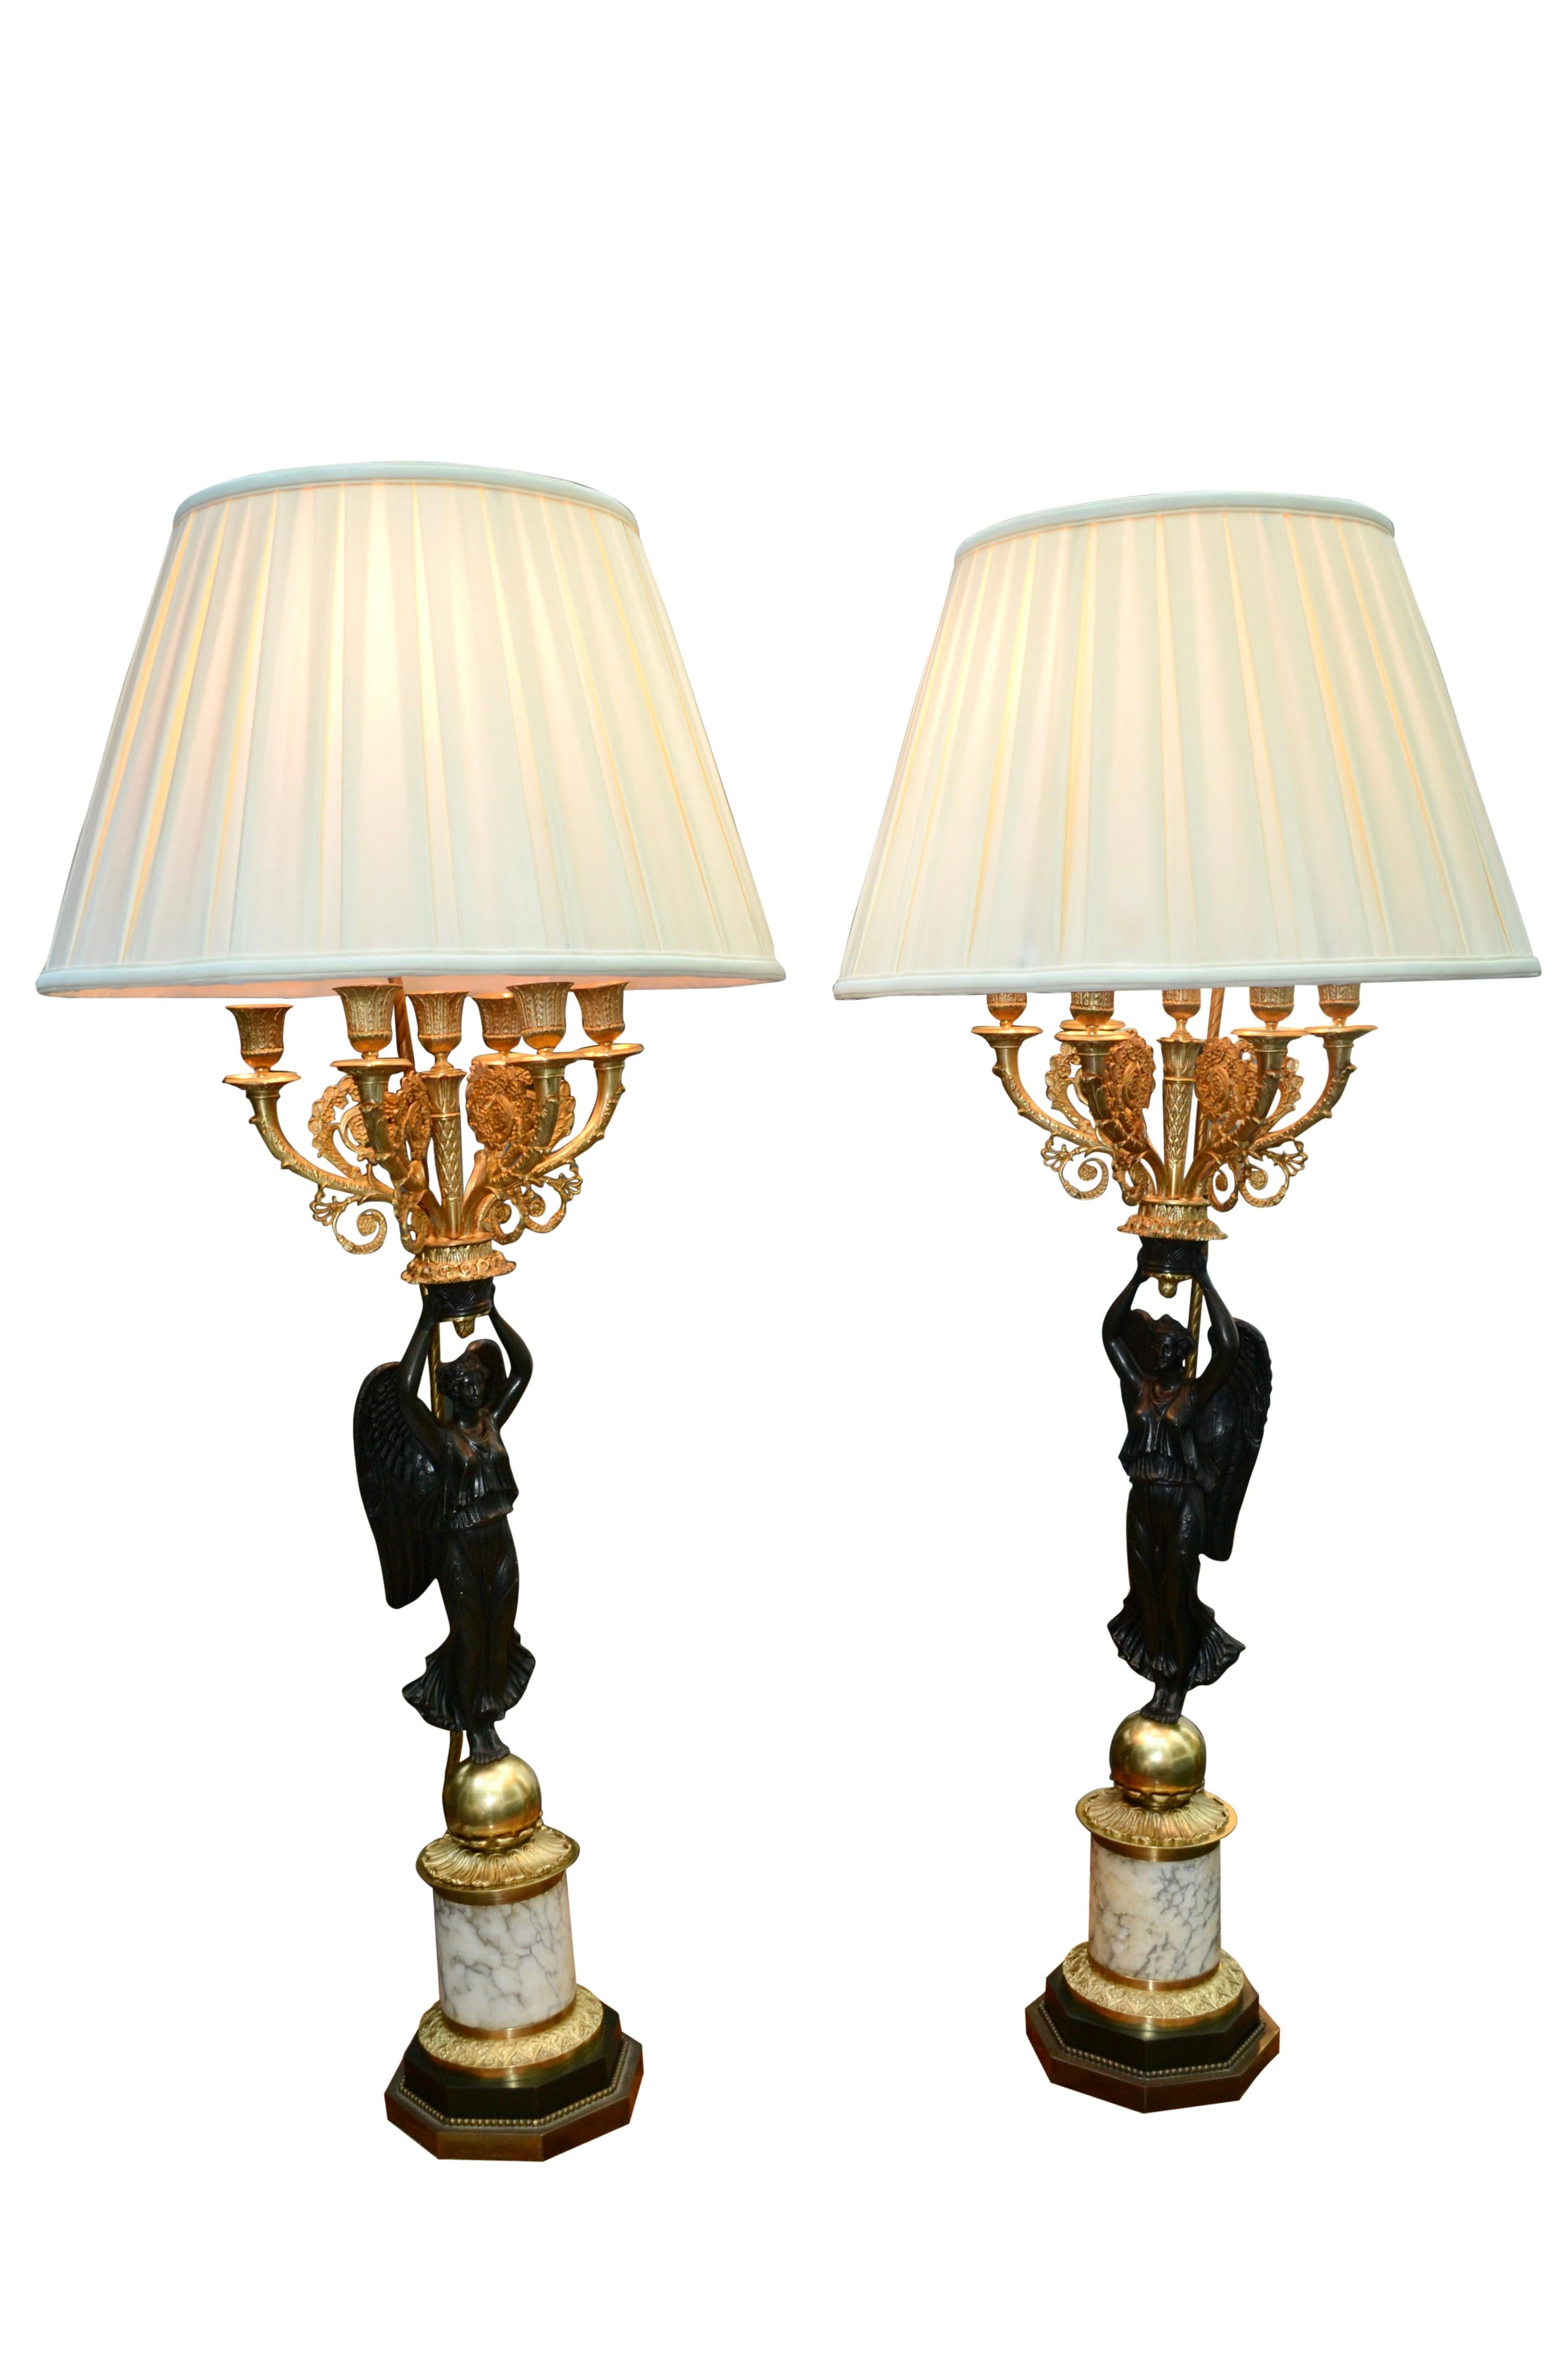 Ein schönes Paar französischer Kandelaber im Empire-Stil aus dem späten 19. Jahrhundert, die jetzt zu Lampen verdrahtet sind. Die sehr gut gegossene und patinierte geflügelte Victory oder Nike steht auf einer vergoldeten Kugel auf einem weiteren